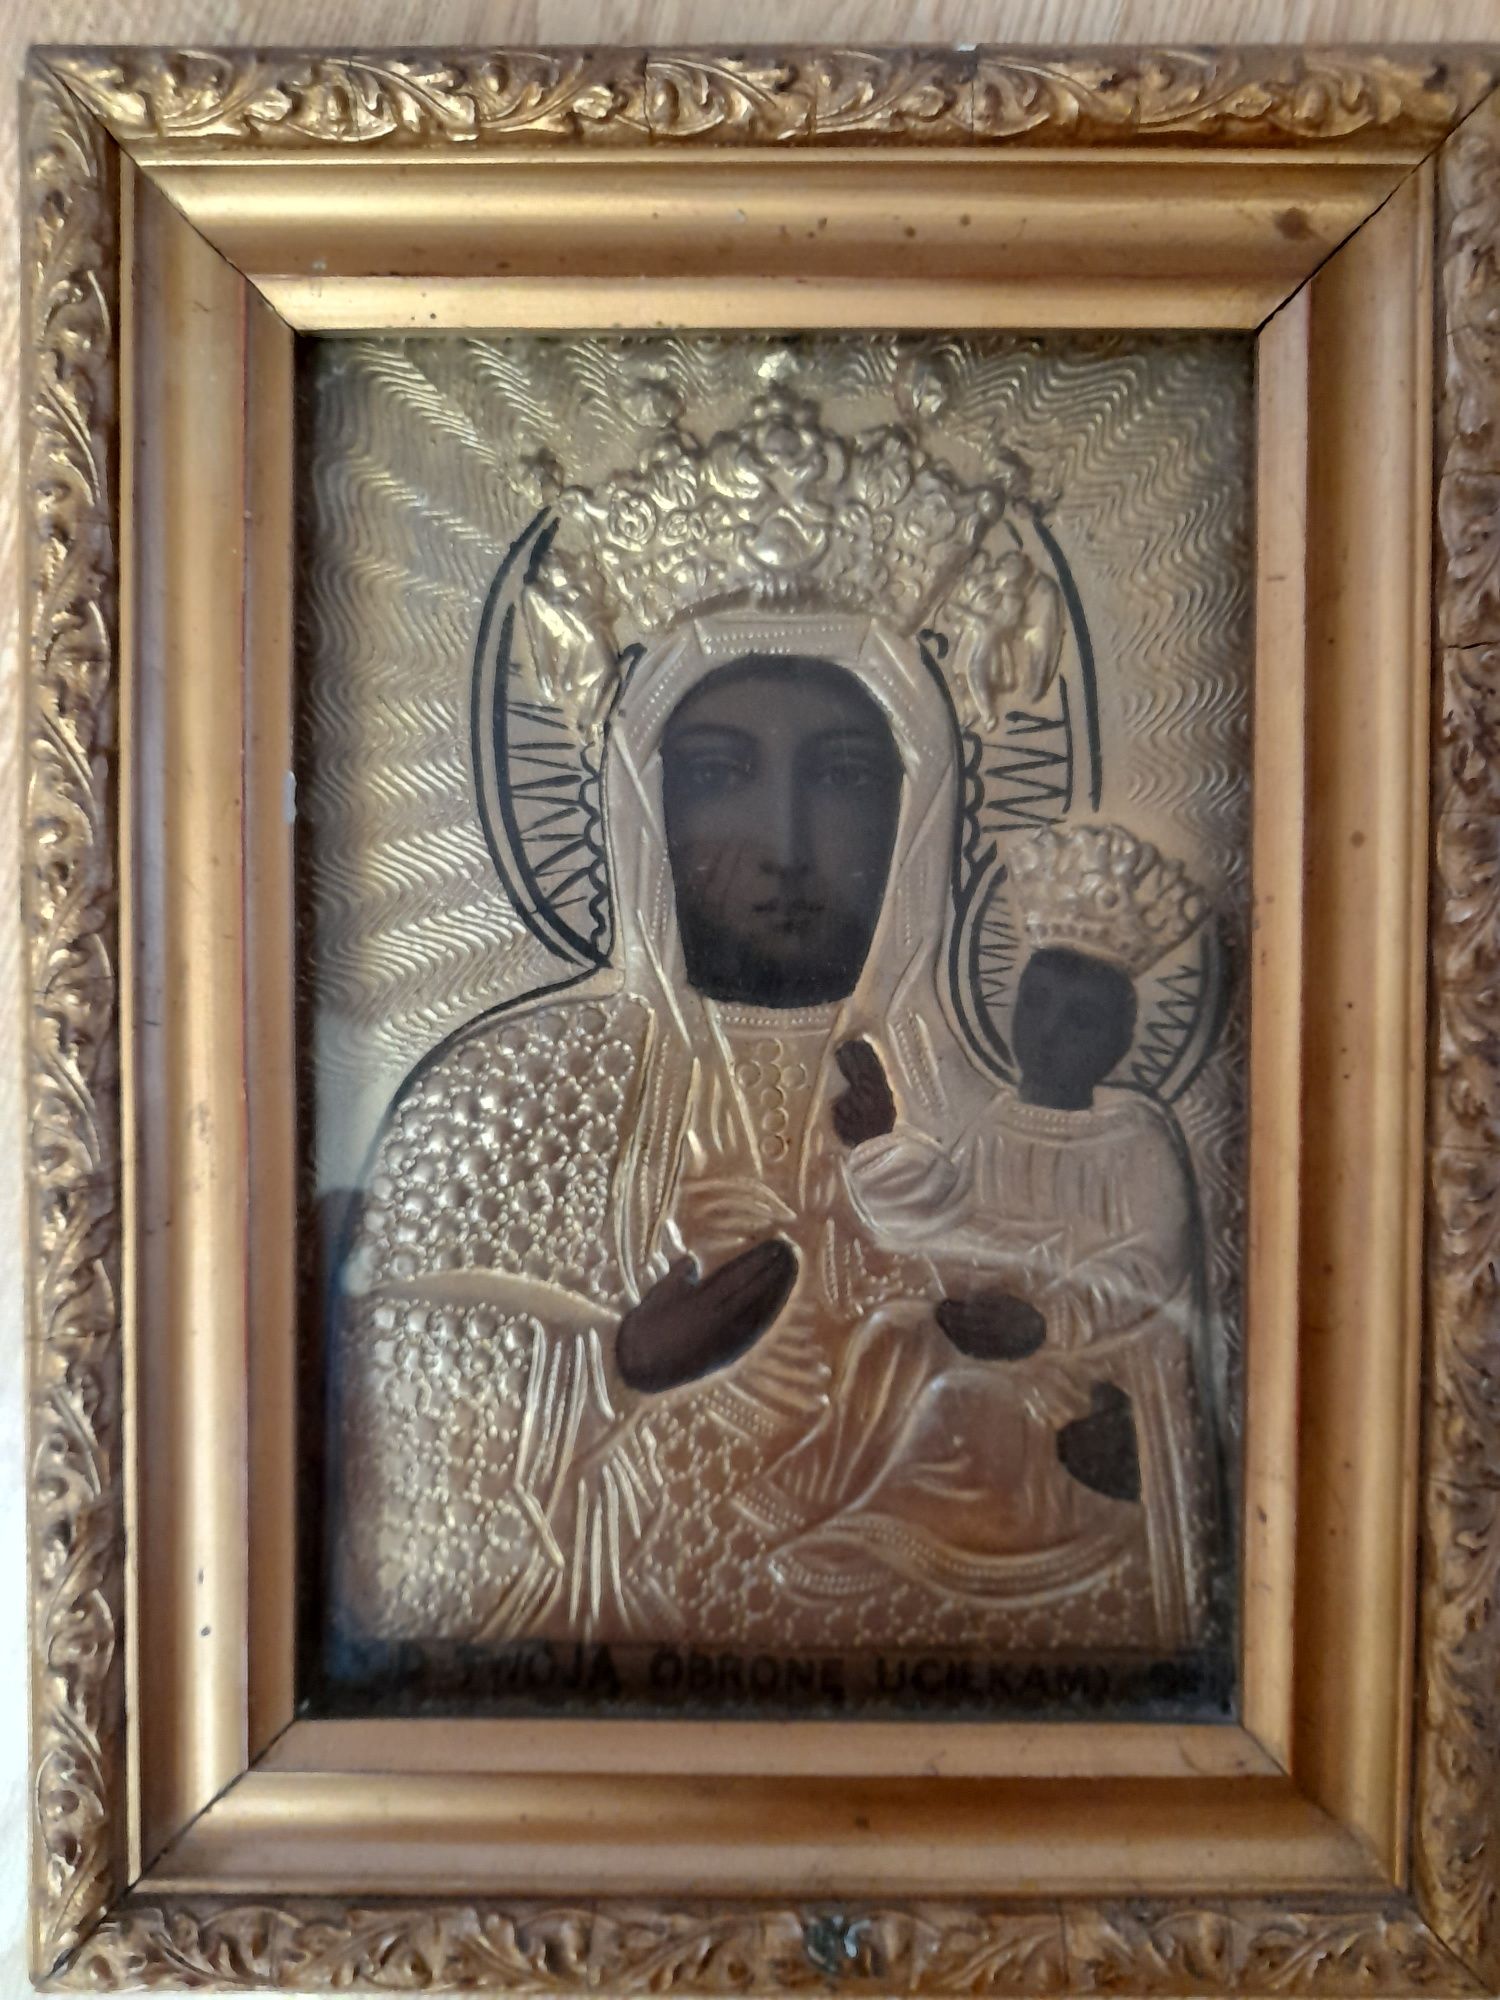 Obraz Matki Boskiej Częstochowskiej

WYMIAR